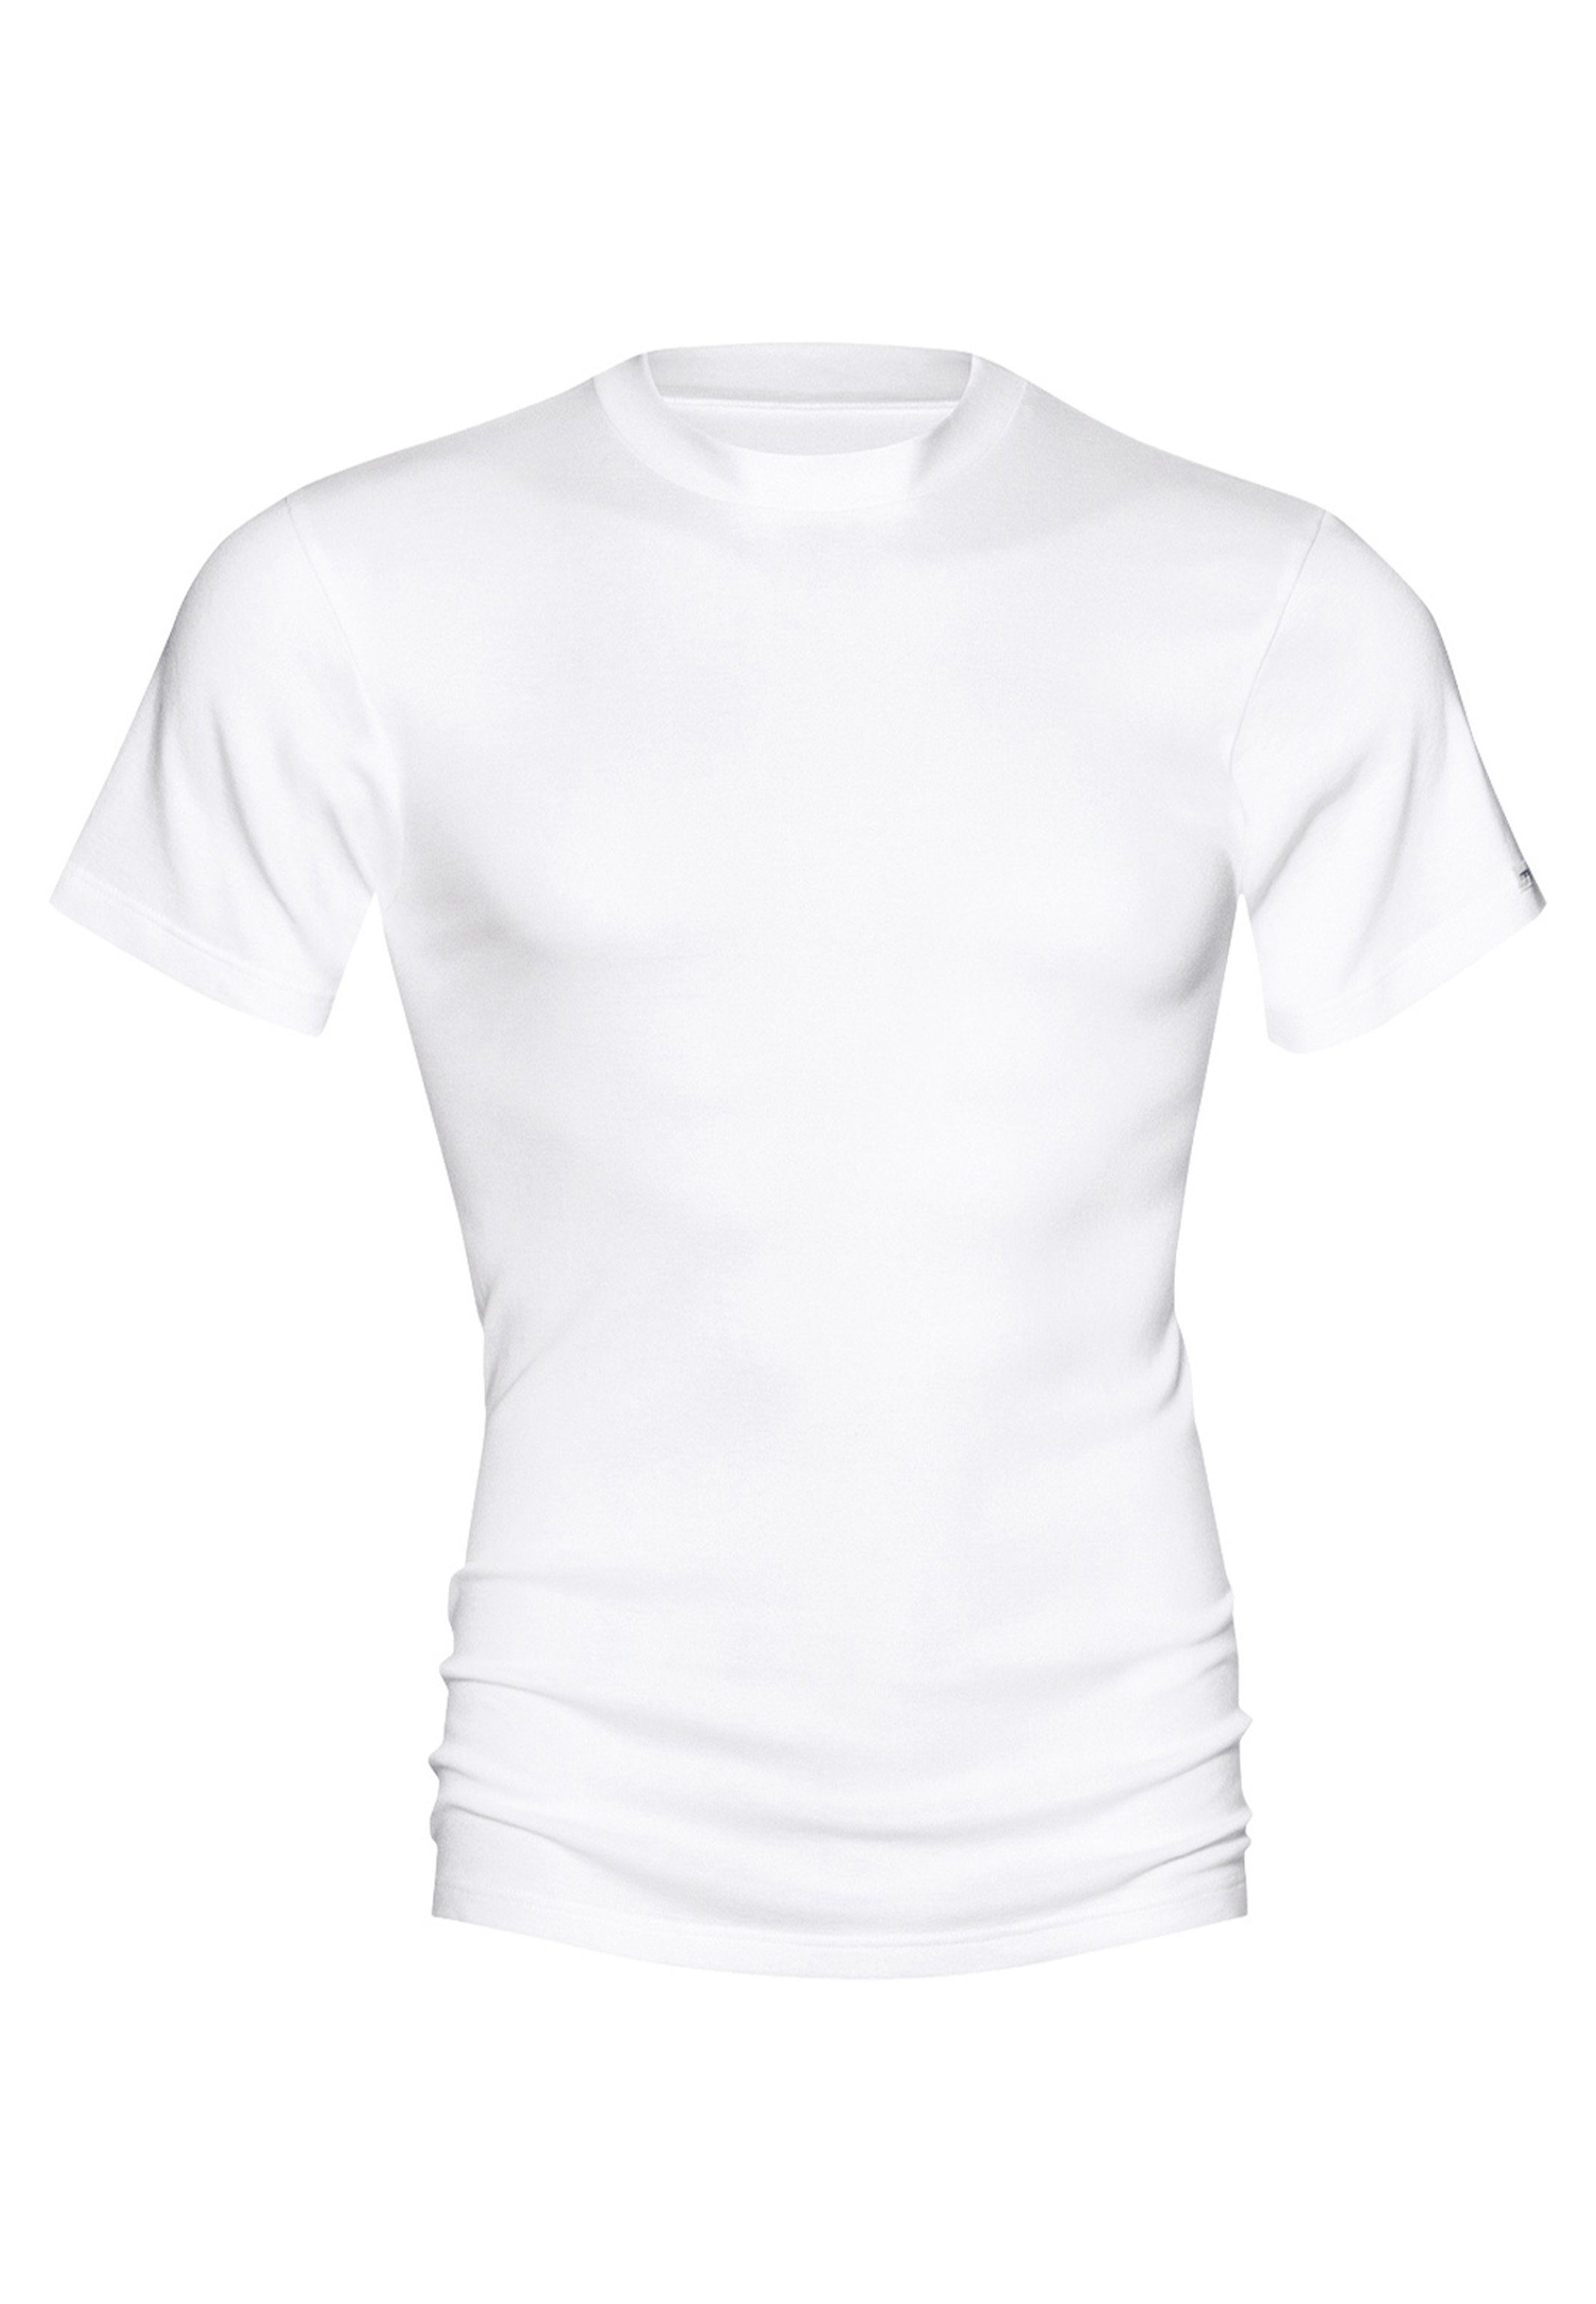 Wäsche/Bademode Unterhemden Mey Unterhemd Noblesse (1 Stück), Olympia T-Shirt - Baumwolle - Ideal als Unterhemd oder Freizeit-Sh